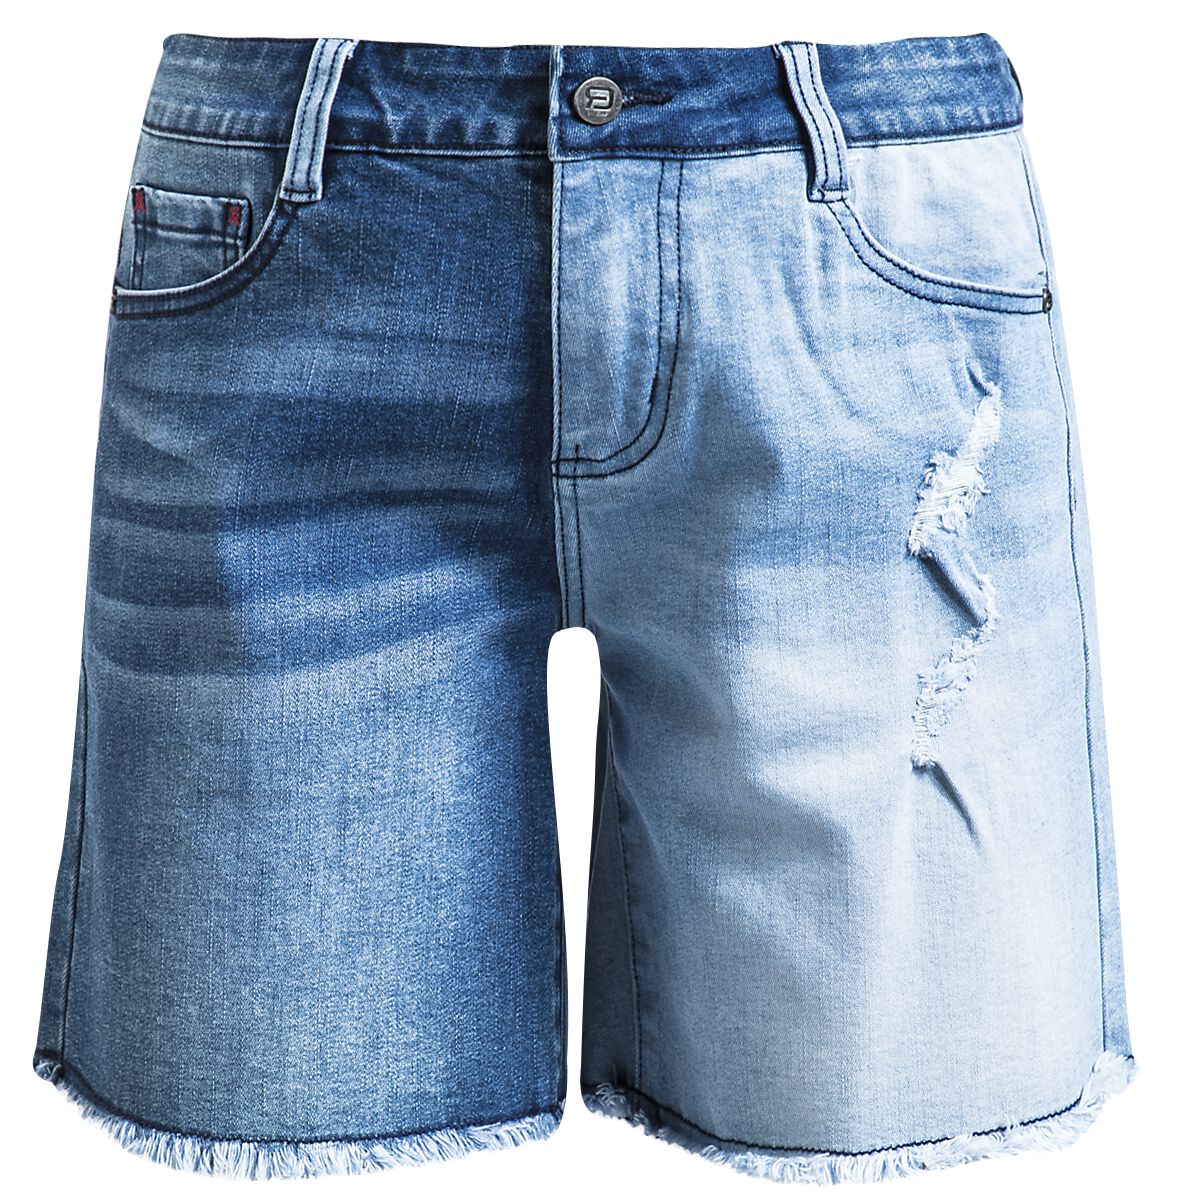 RED by EMP - Jeans Shorts mit Destroy Detail - Short - blau - EMP Exklusiv!